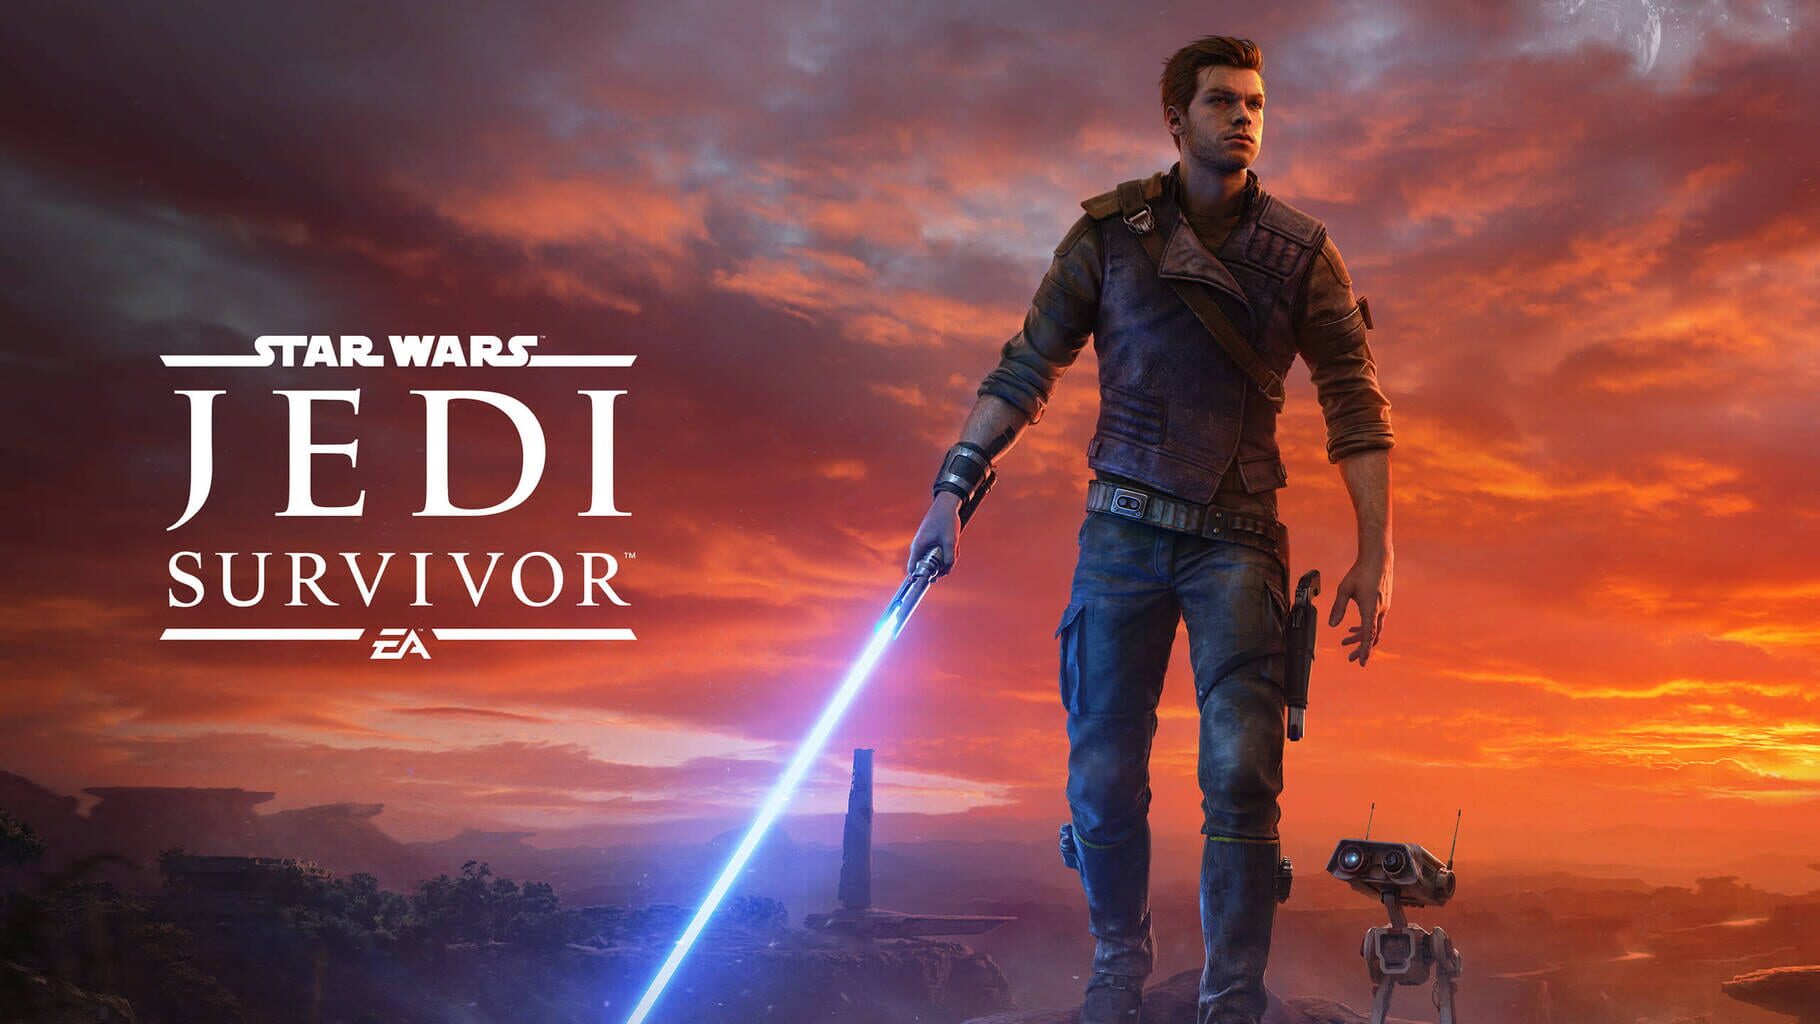 Star Wars Jedi: Survivor Image